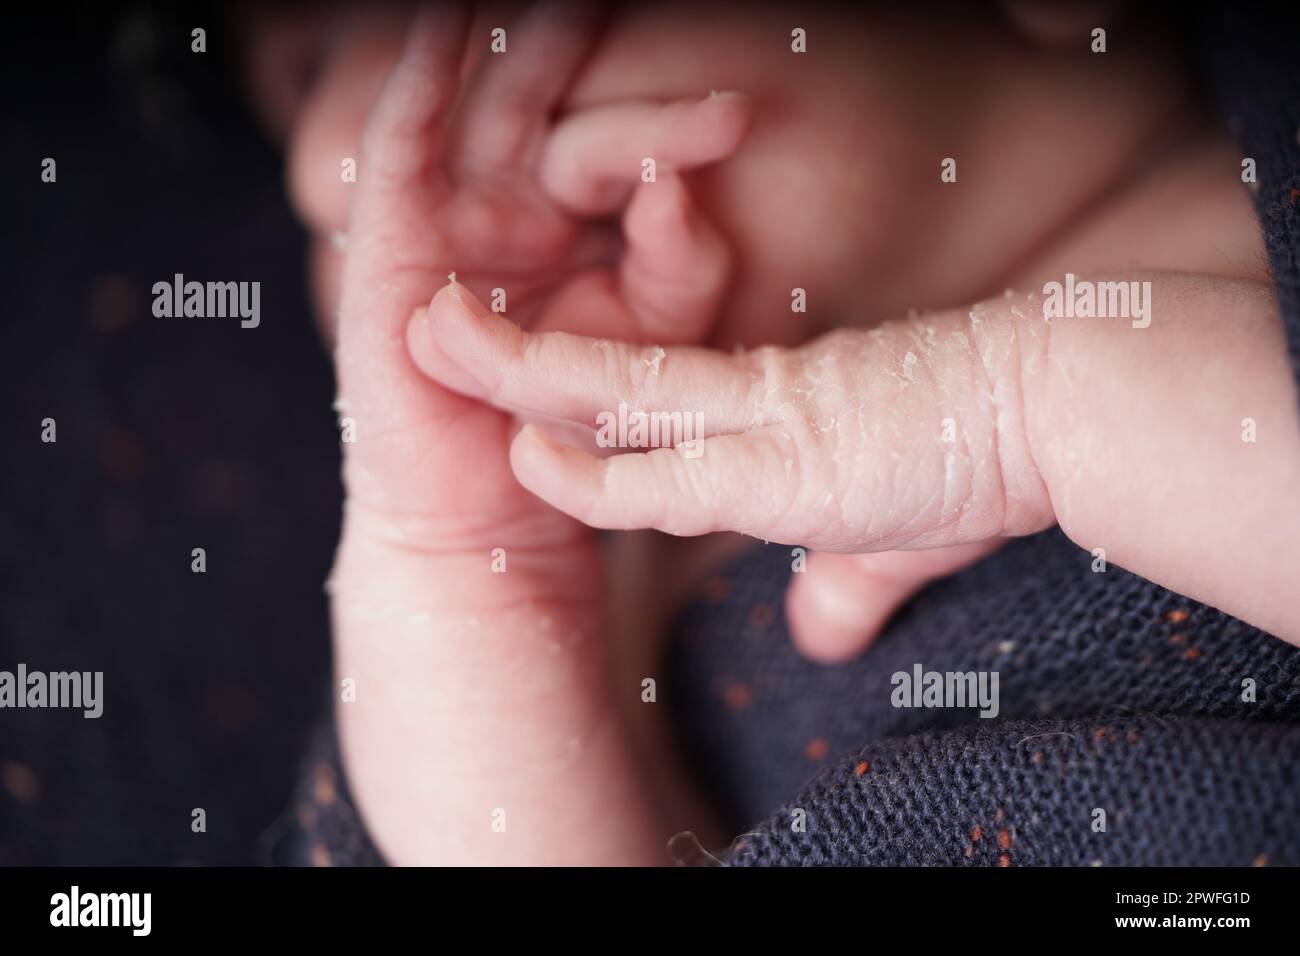 Ein kleines süßes Baby, geboren eine Woche alt. Neugeborenen-Peeling. Hände und Gesichtshaut des Neugeborenen mit Hautablösungen. Nahaufnahme der Hände Details des Neugeborenen. Stockfoto